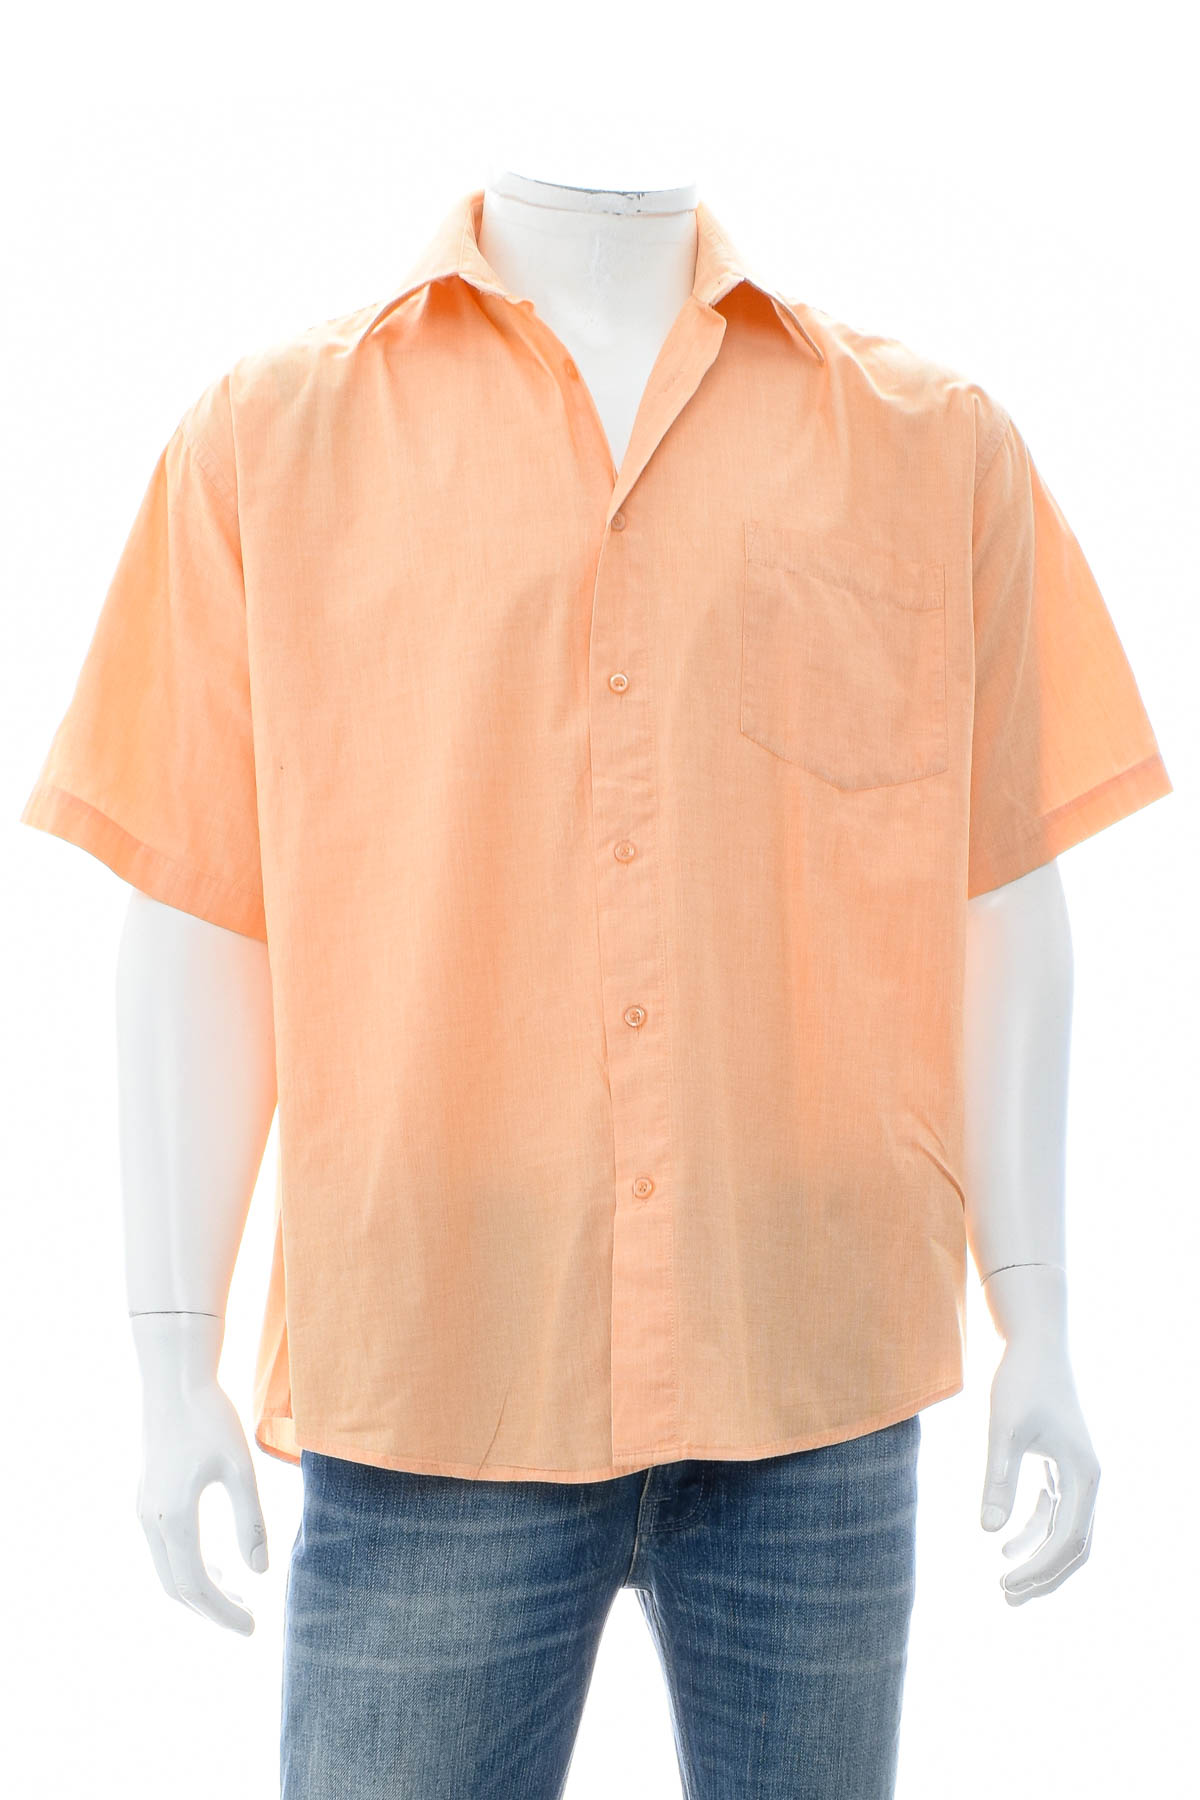 Ανδρικό πουκάμισο - Torelli - 0